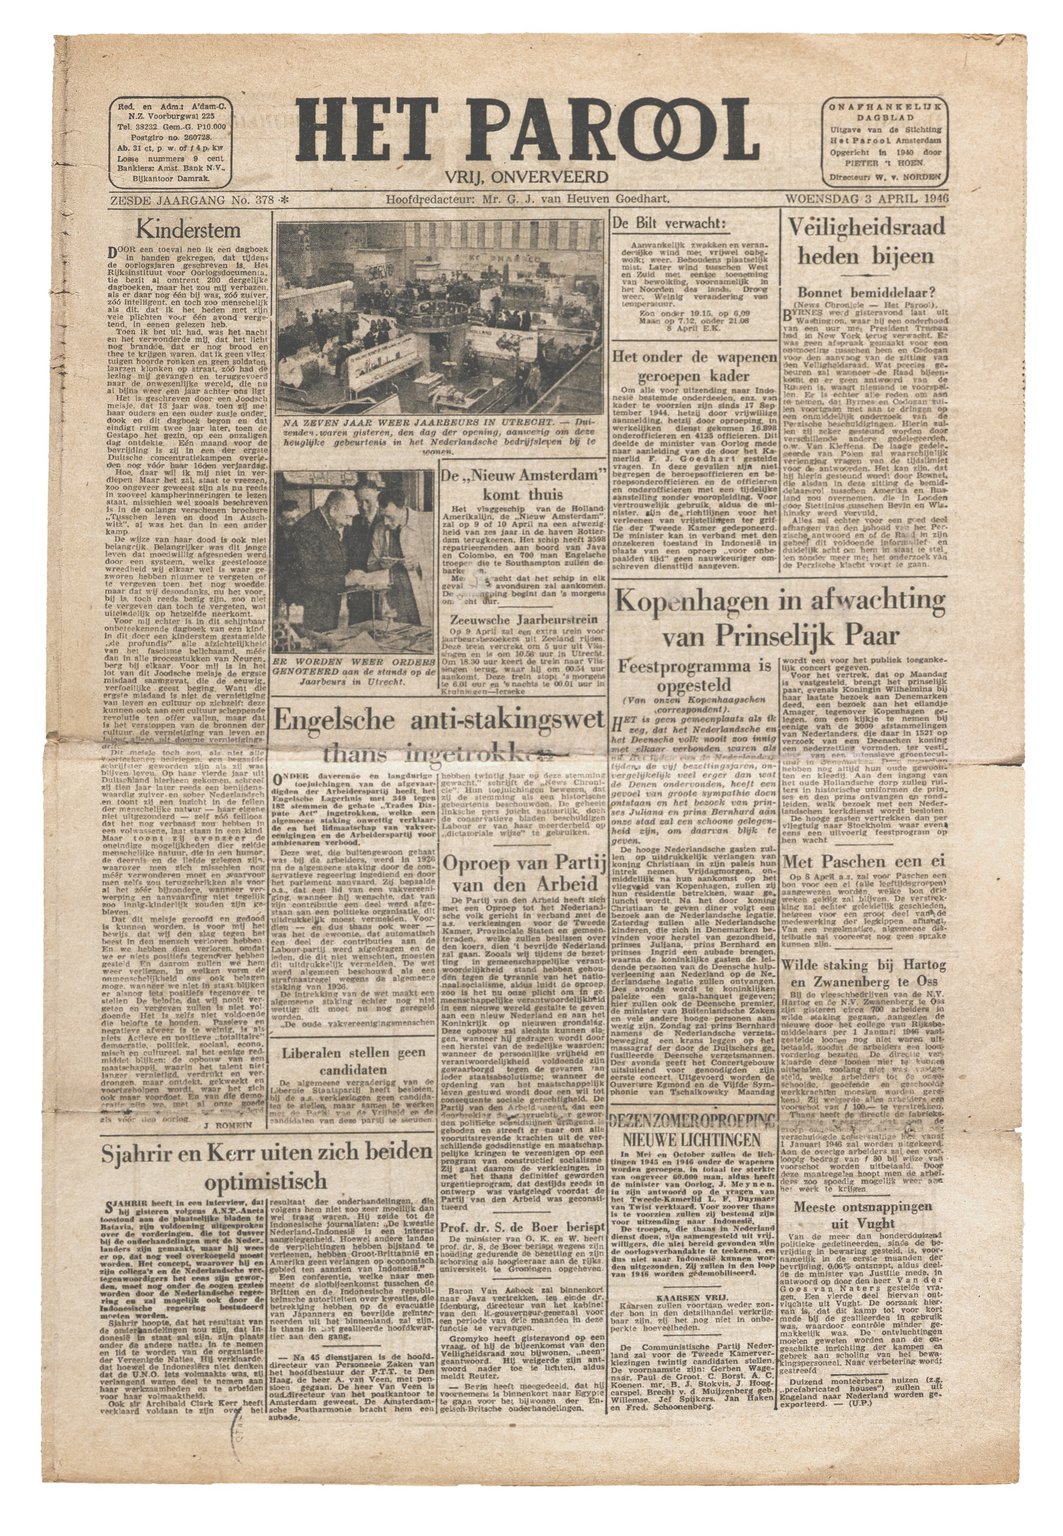 Het artikel 'Kinderstem' van Jan Romein op de voorpagina van Het Parool, 3 april 1946.